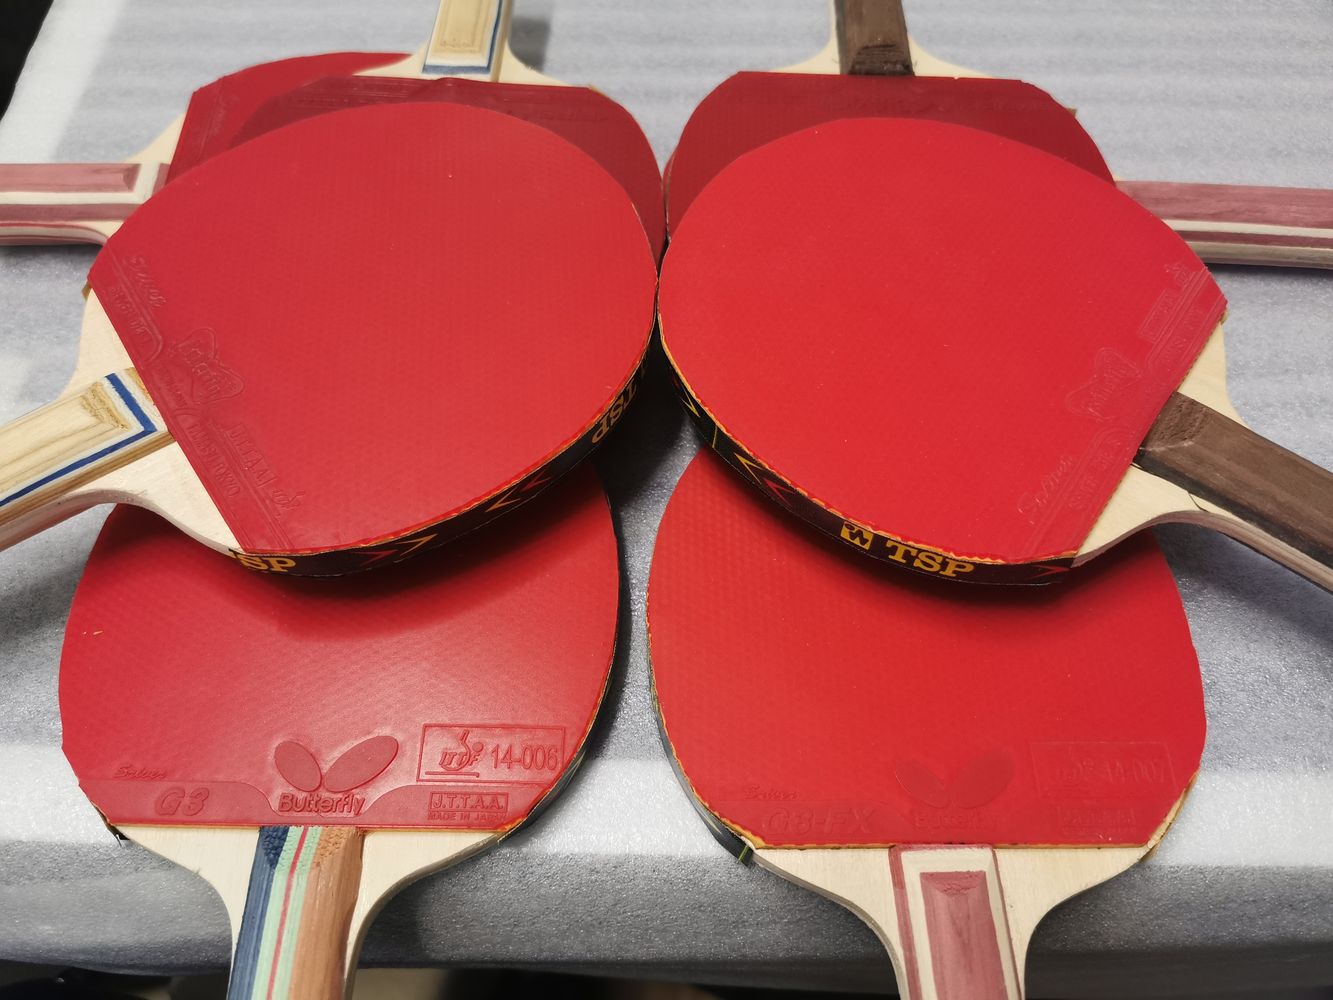 TT-GURU Midi-Schläger mit gebrauchten Belägen » Tischtennis Restposten